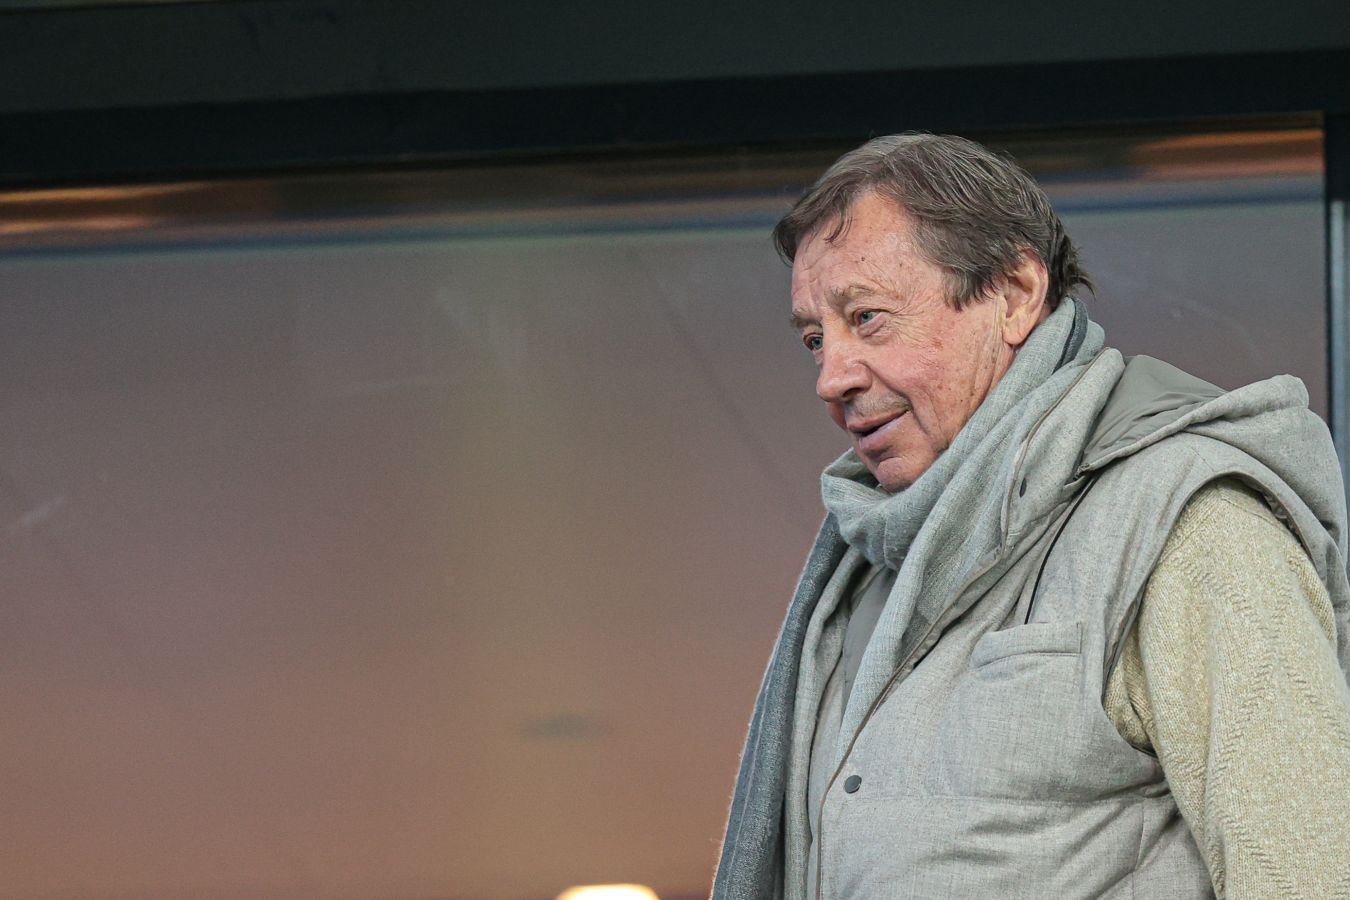 Юрий Сёмин поздравил «Оренбург» с выходом в Премьер-Лигу